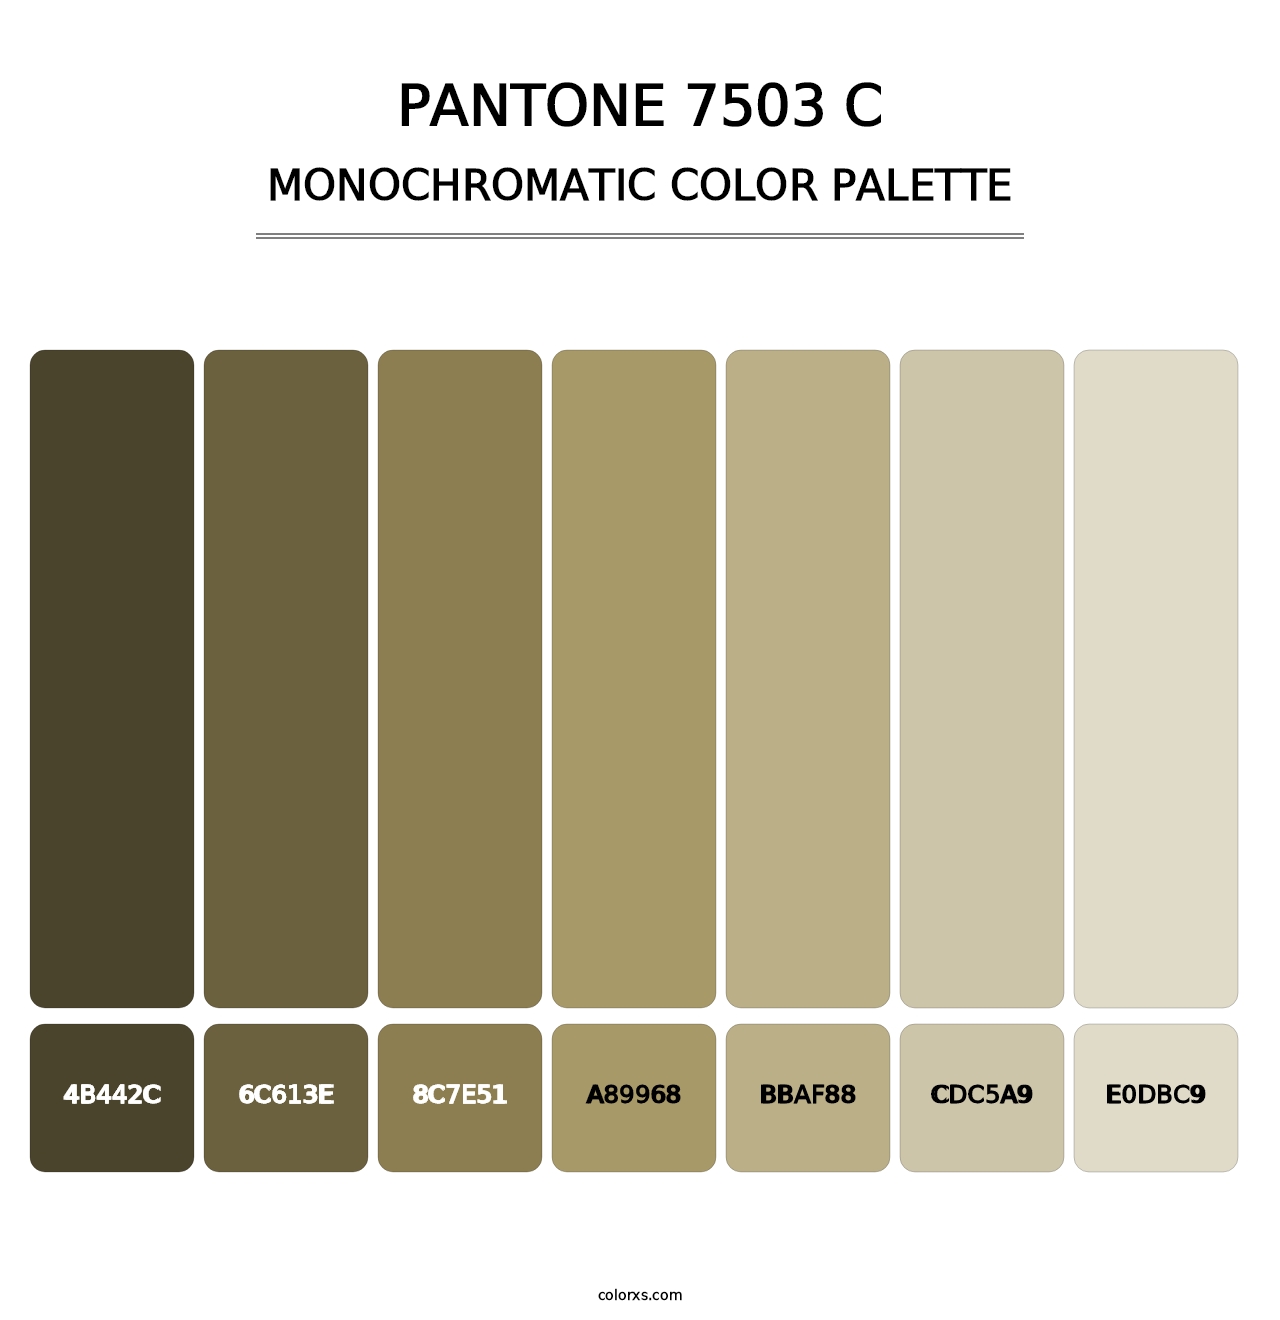 PANTONE 7503 C - Monochromatic Color Palette